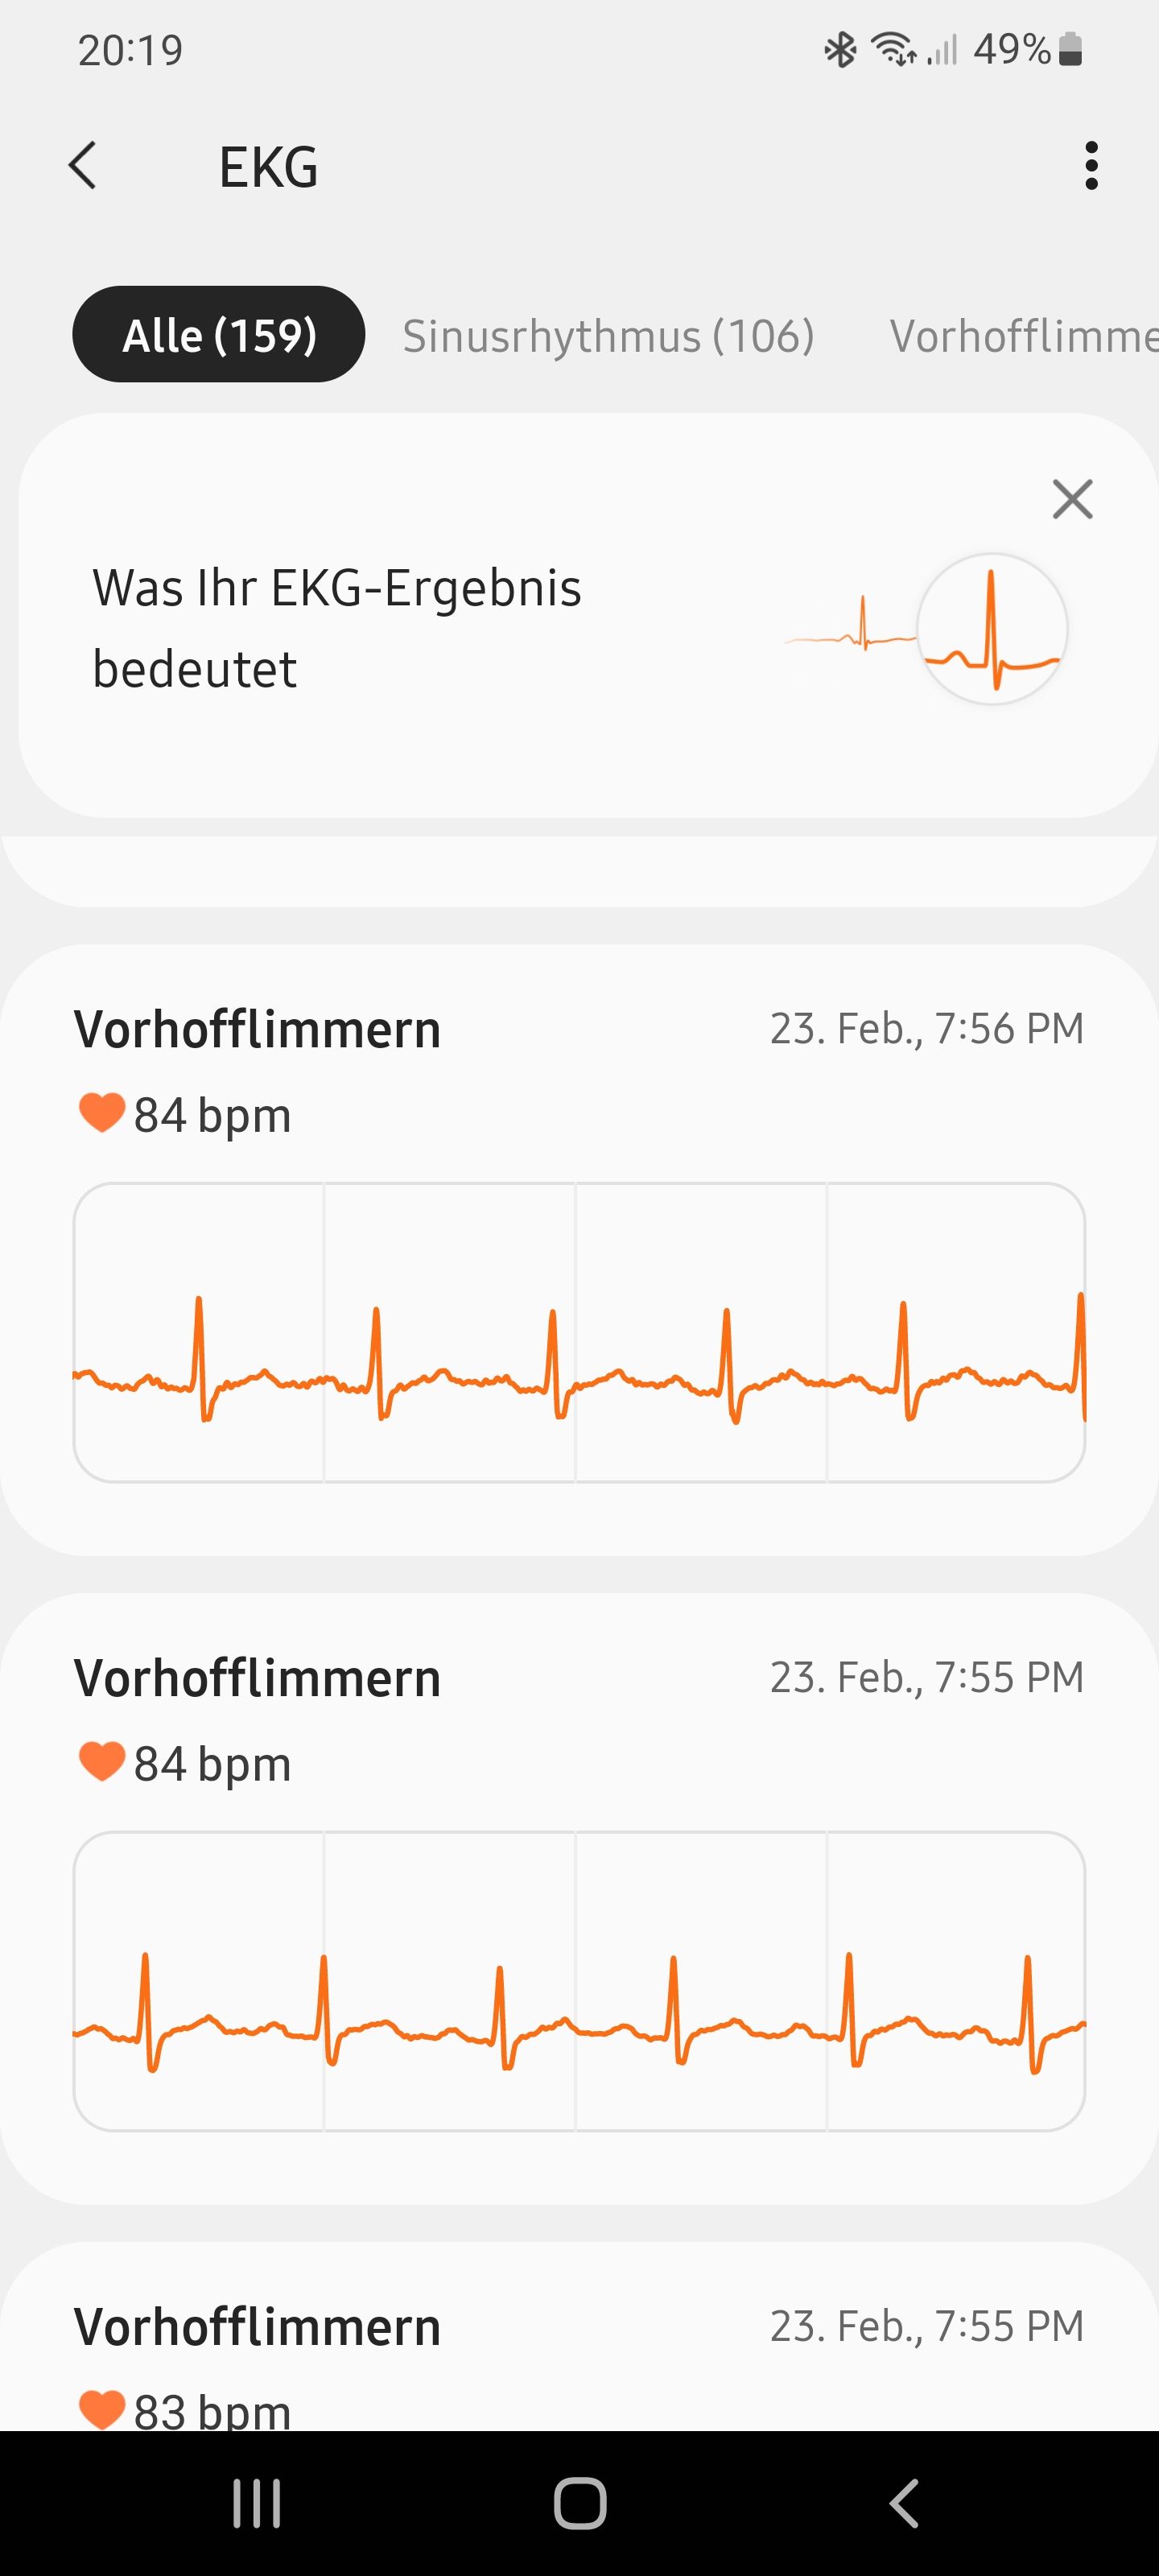 EKG/Vorhofflimmern - Samsung Community